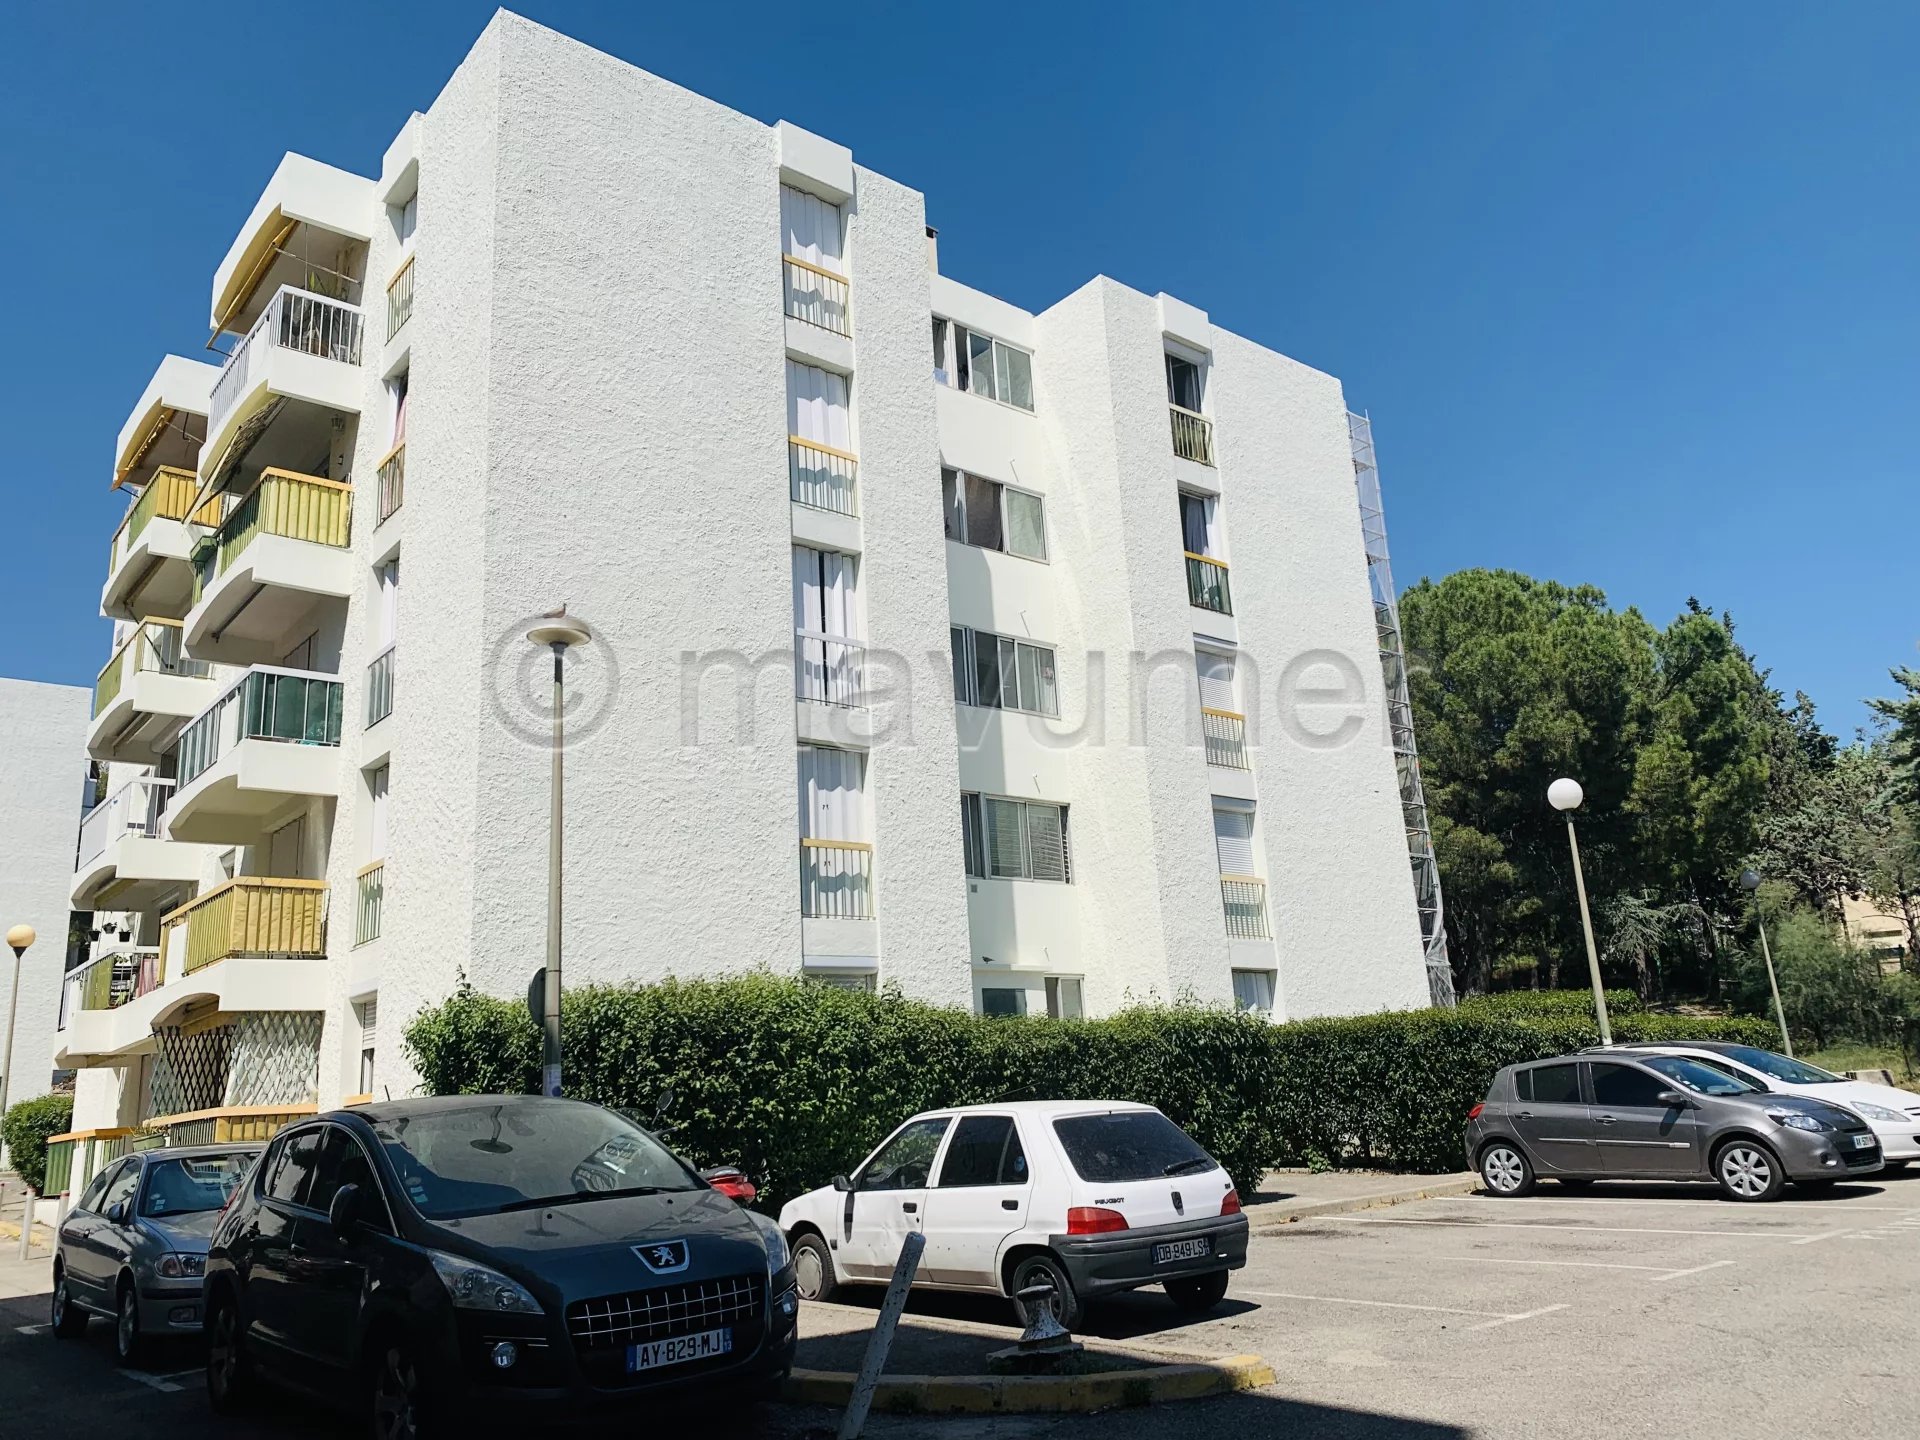 Sale Apartment - Marseille 13ème Malpassé